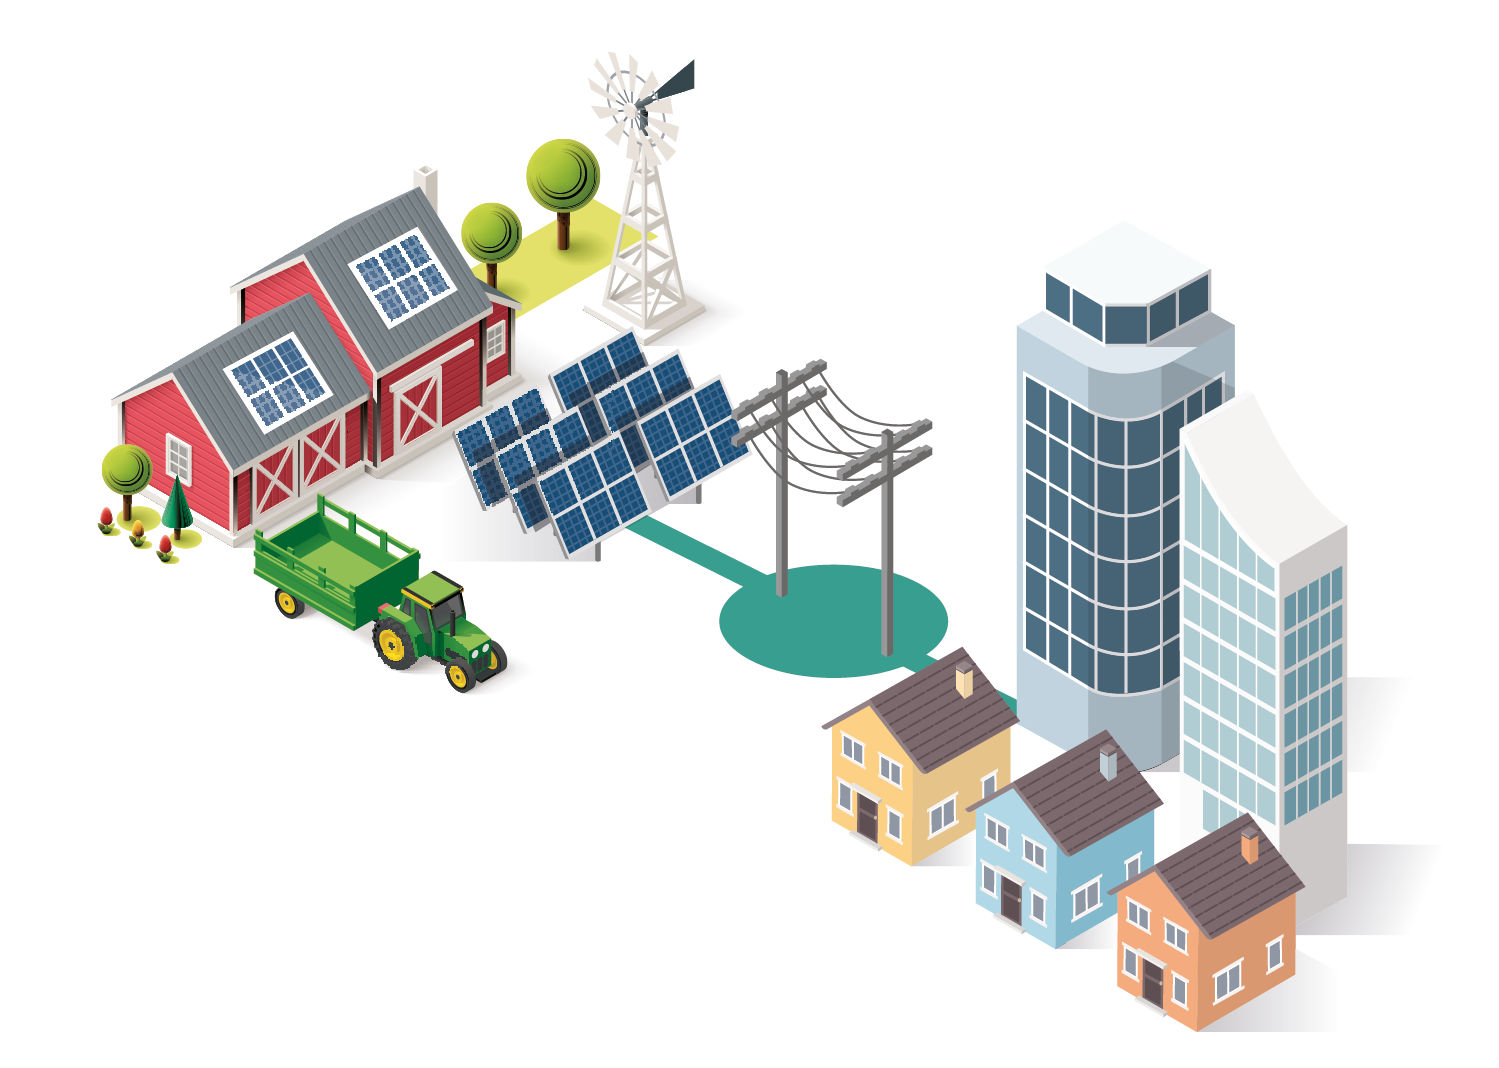 Fazenda com sistemas solares na fazenda e no telhado, que estão conectados à rede elétrica e abastecem a cidade